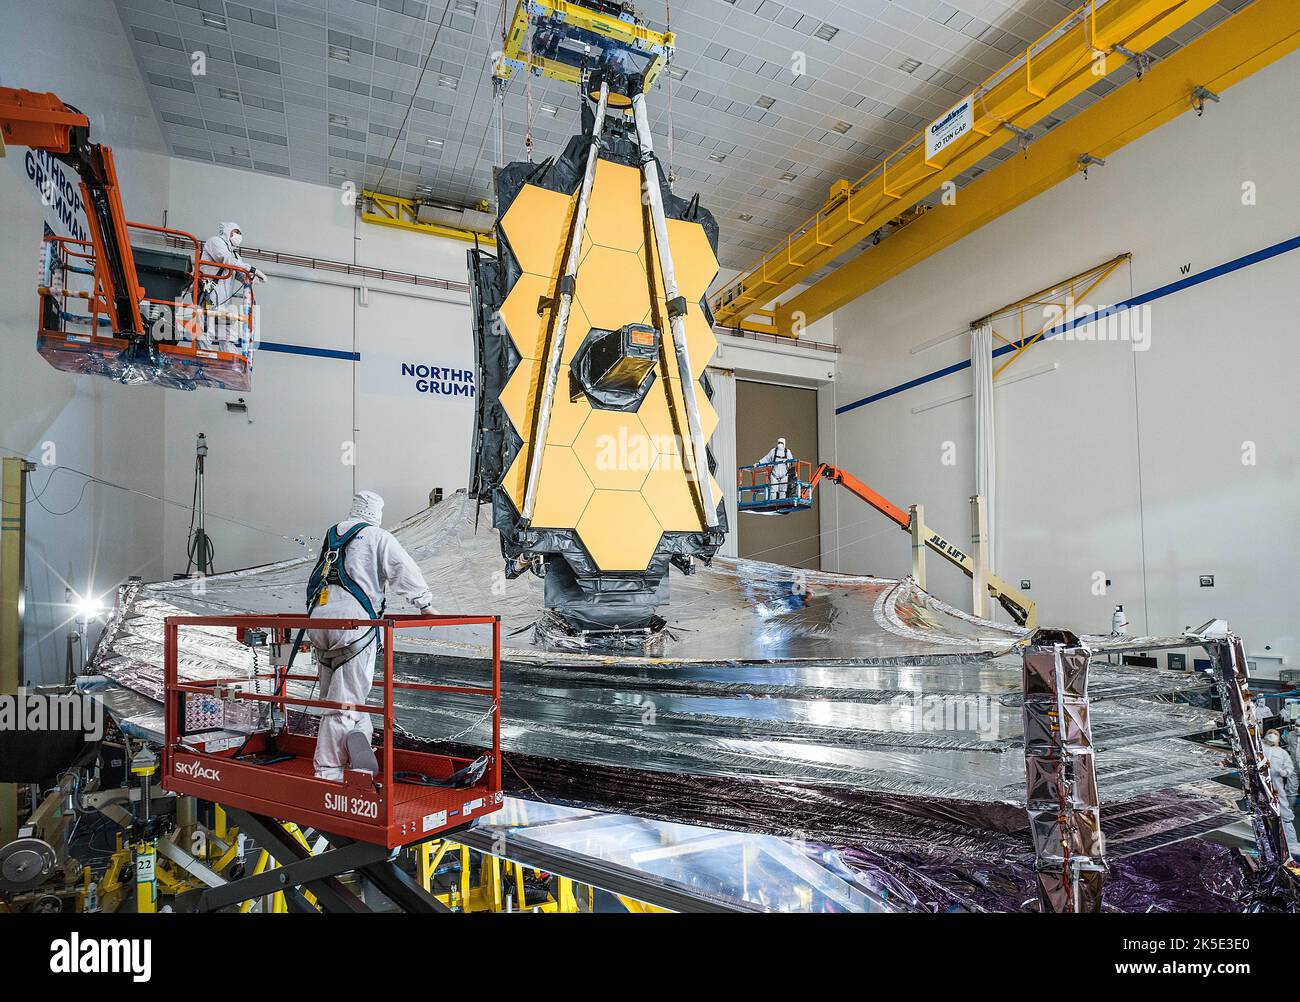 Vorbereitung des James Webb Space Telescope (JWST). Der 5-lagige Sonnenschutz von Webb wurde erfolgreich getestet und in der gleichen Konfiguration eingesetzt und gespannt, wie er im Weltraum eingesetzt wird. Hier kann die JWST in ihrer letzten Reihe von Einsatz- und Checkout-Tests gesehen werden, bevor die Sternwarte für den Versand nach Französisch-Guayana zum Start an Bord einer ArianeGroup Ariane V-Rakete verpackt wird. Mit diesen Tests wird sichergestellt, dass Webb nach seinem Start perfekt im Weltraum bereitgestellt wird. Eine optimierte Version eines NASA-Bildes vom erfahrenen Hauptfotografen Chris Gunn. Quelle: NASA/Chris Gunn. Nur für redaktionelle Zwecke. Stockfoto